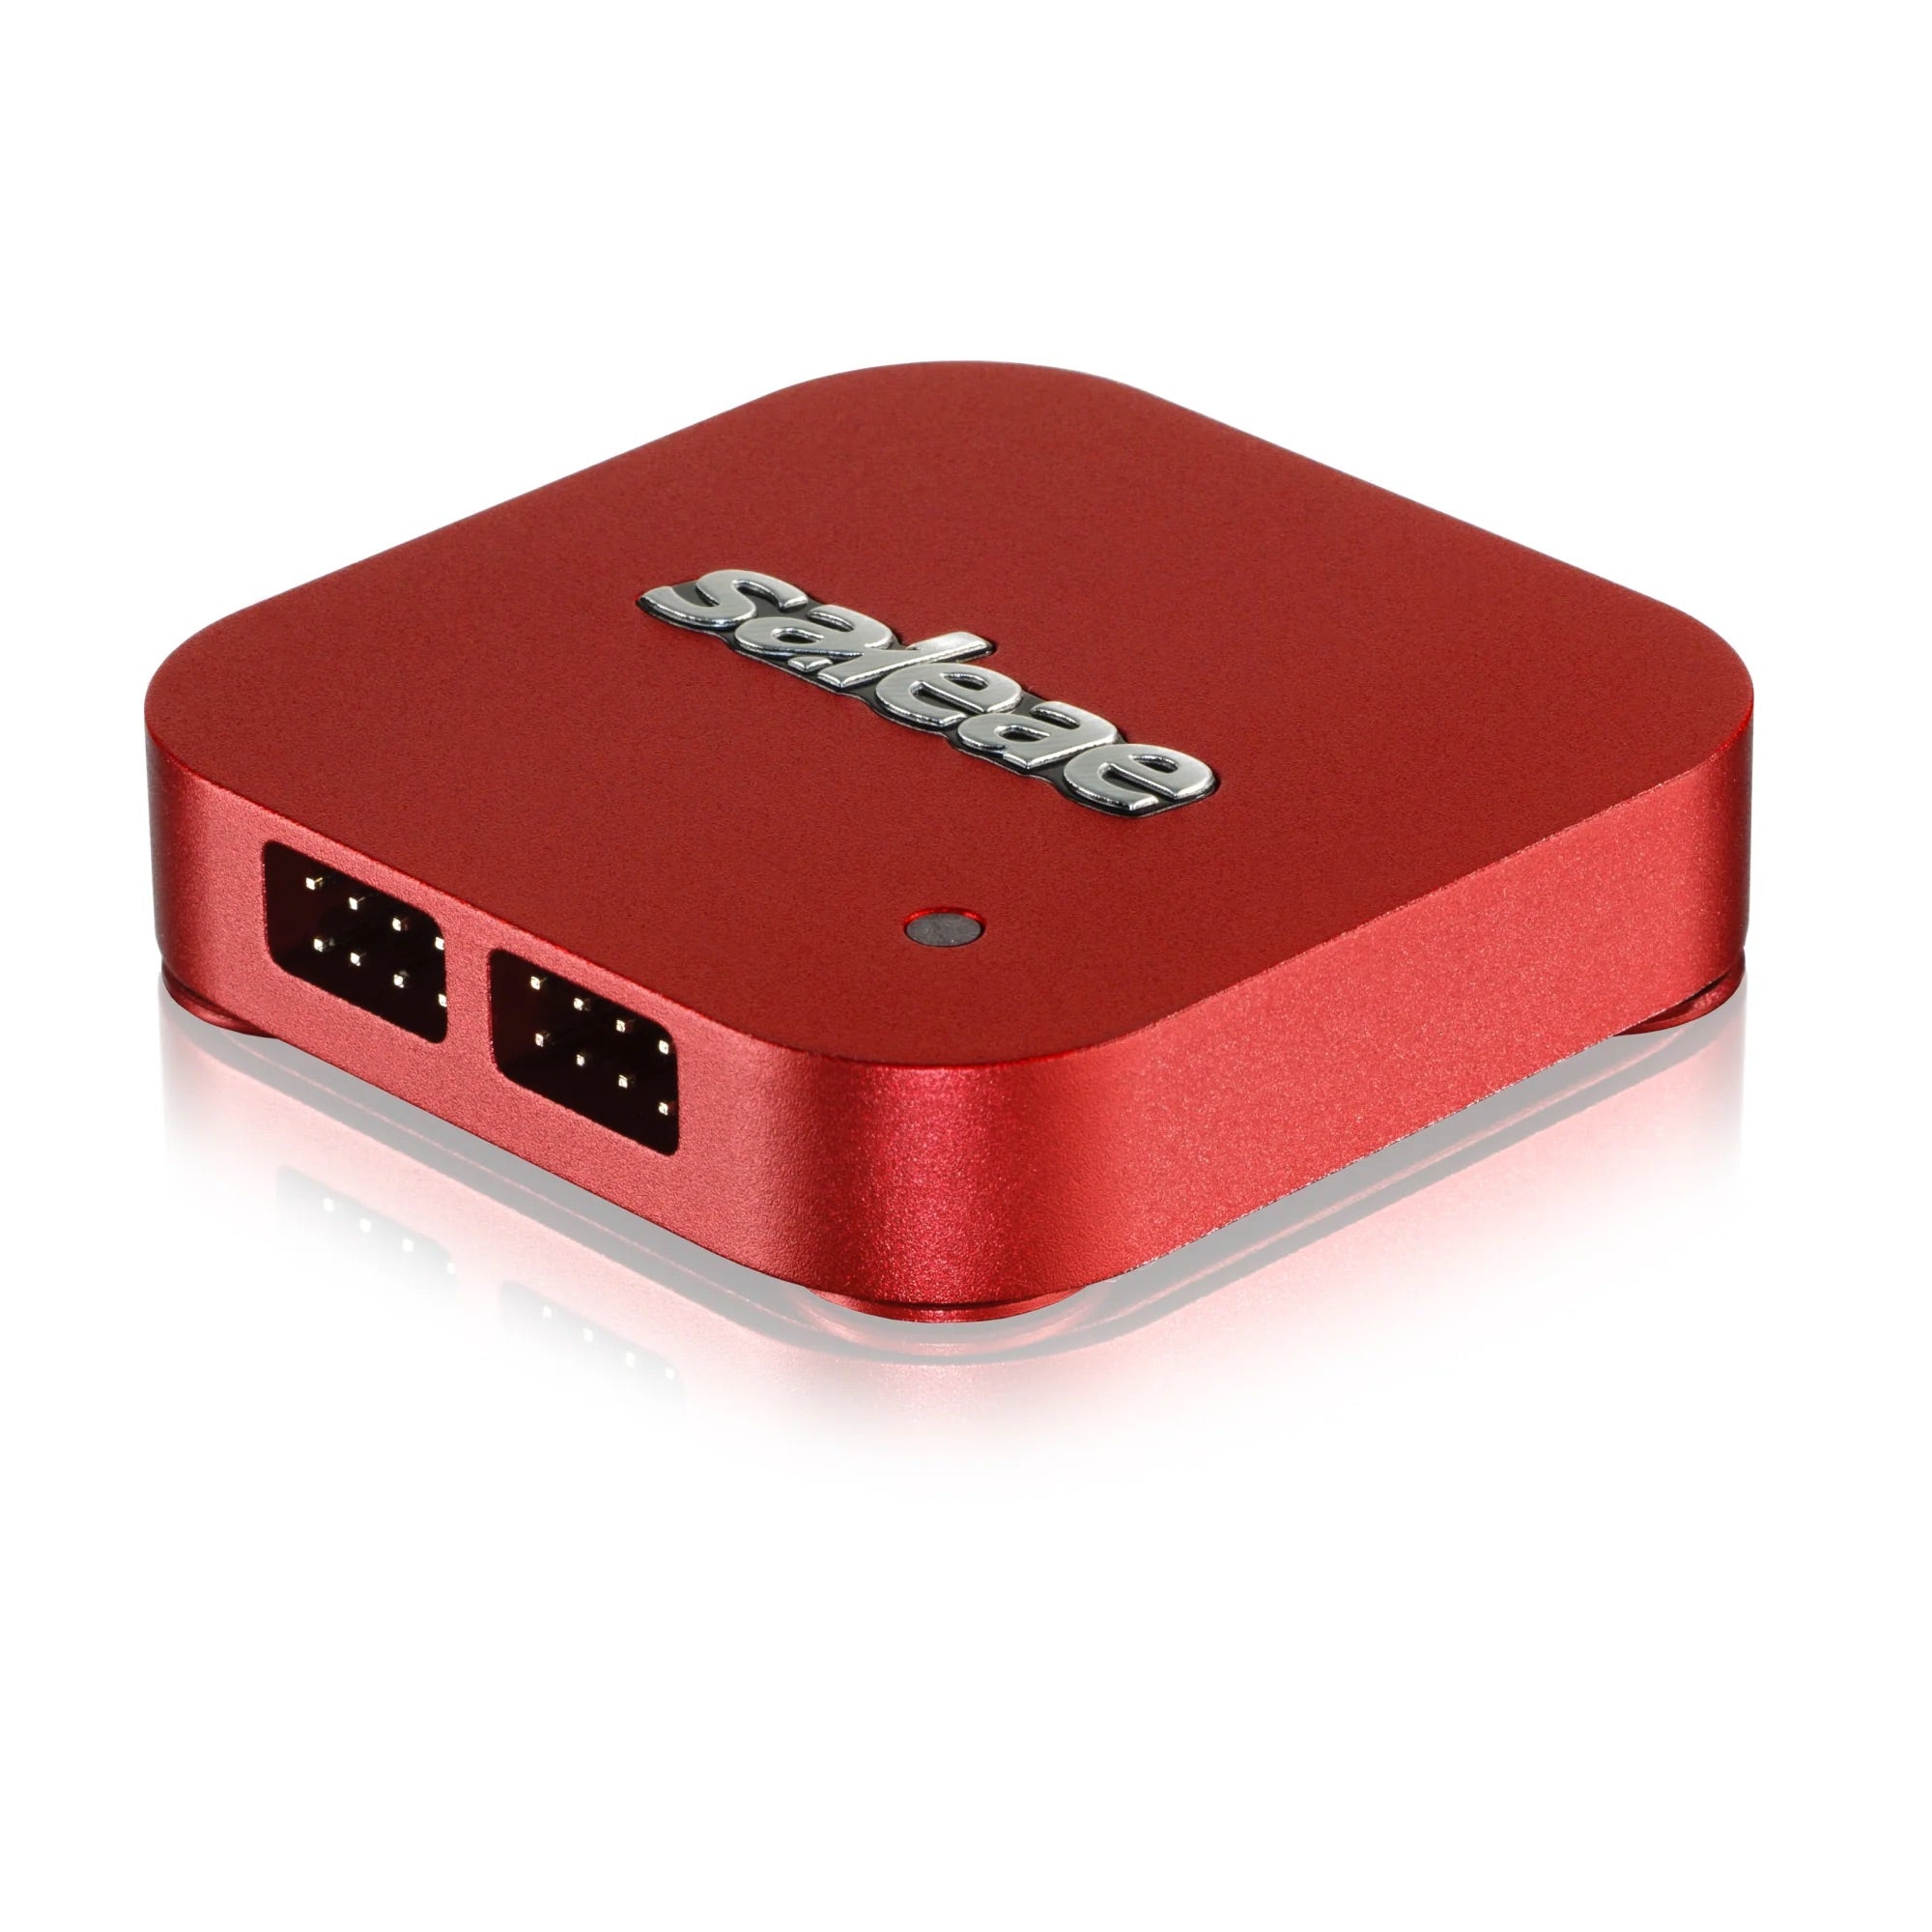 Saleae Logic 8 - USB Logic Analyzer - Red